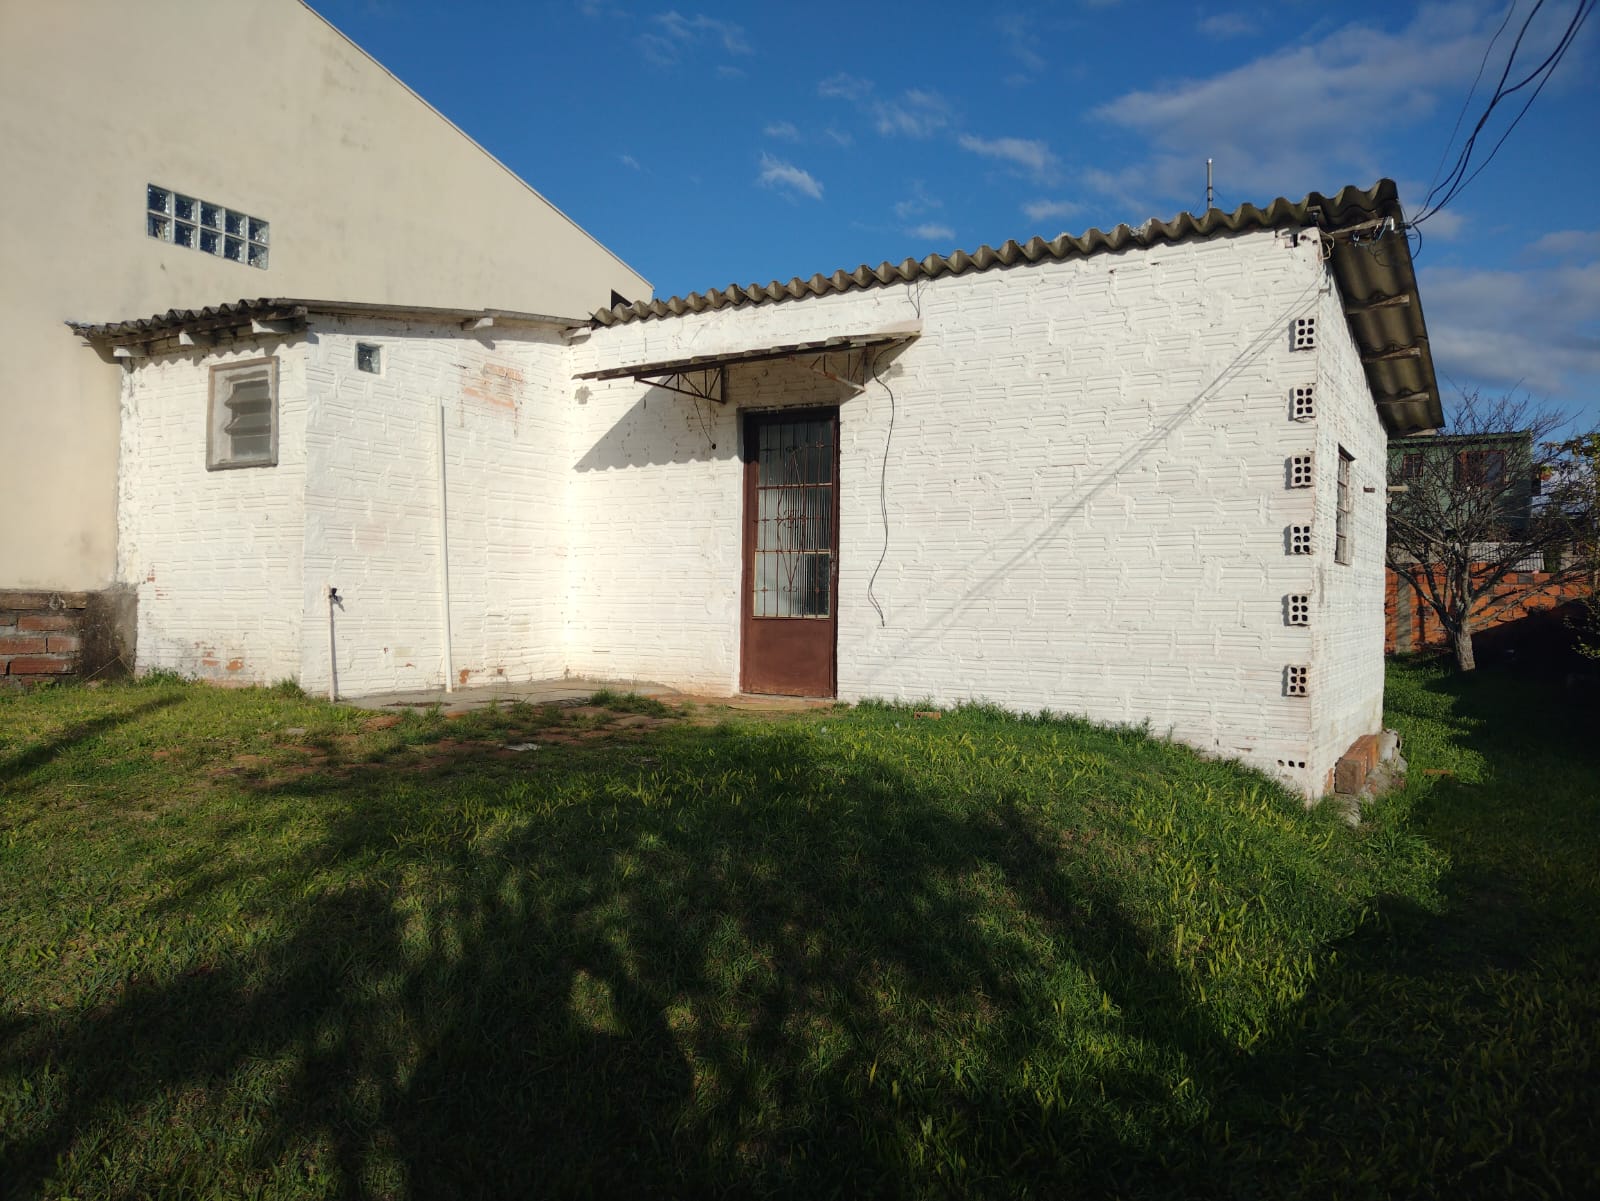 Aluguél – B. Fátima – Casa 1 dormitório e demais peças – R$ 500,00